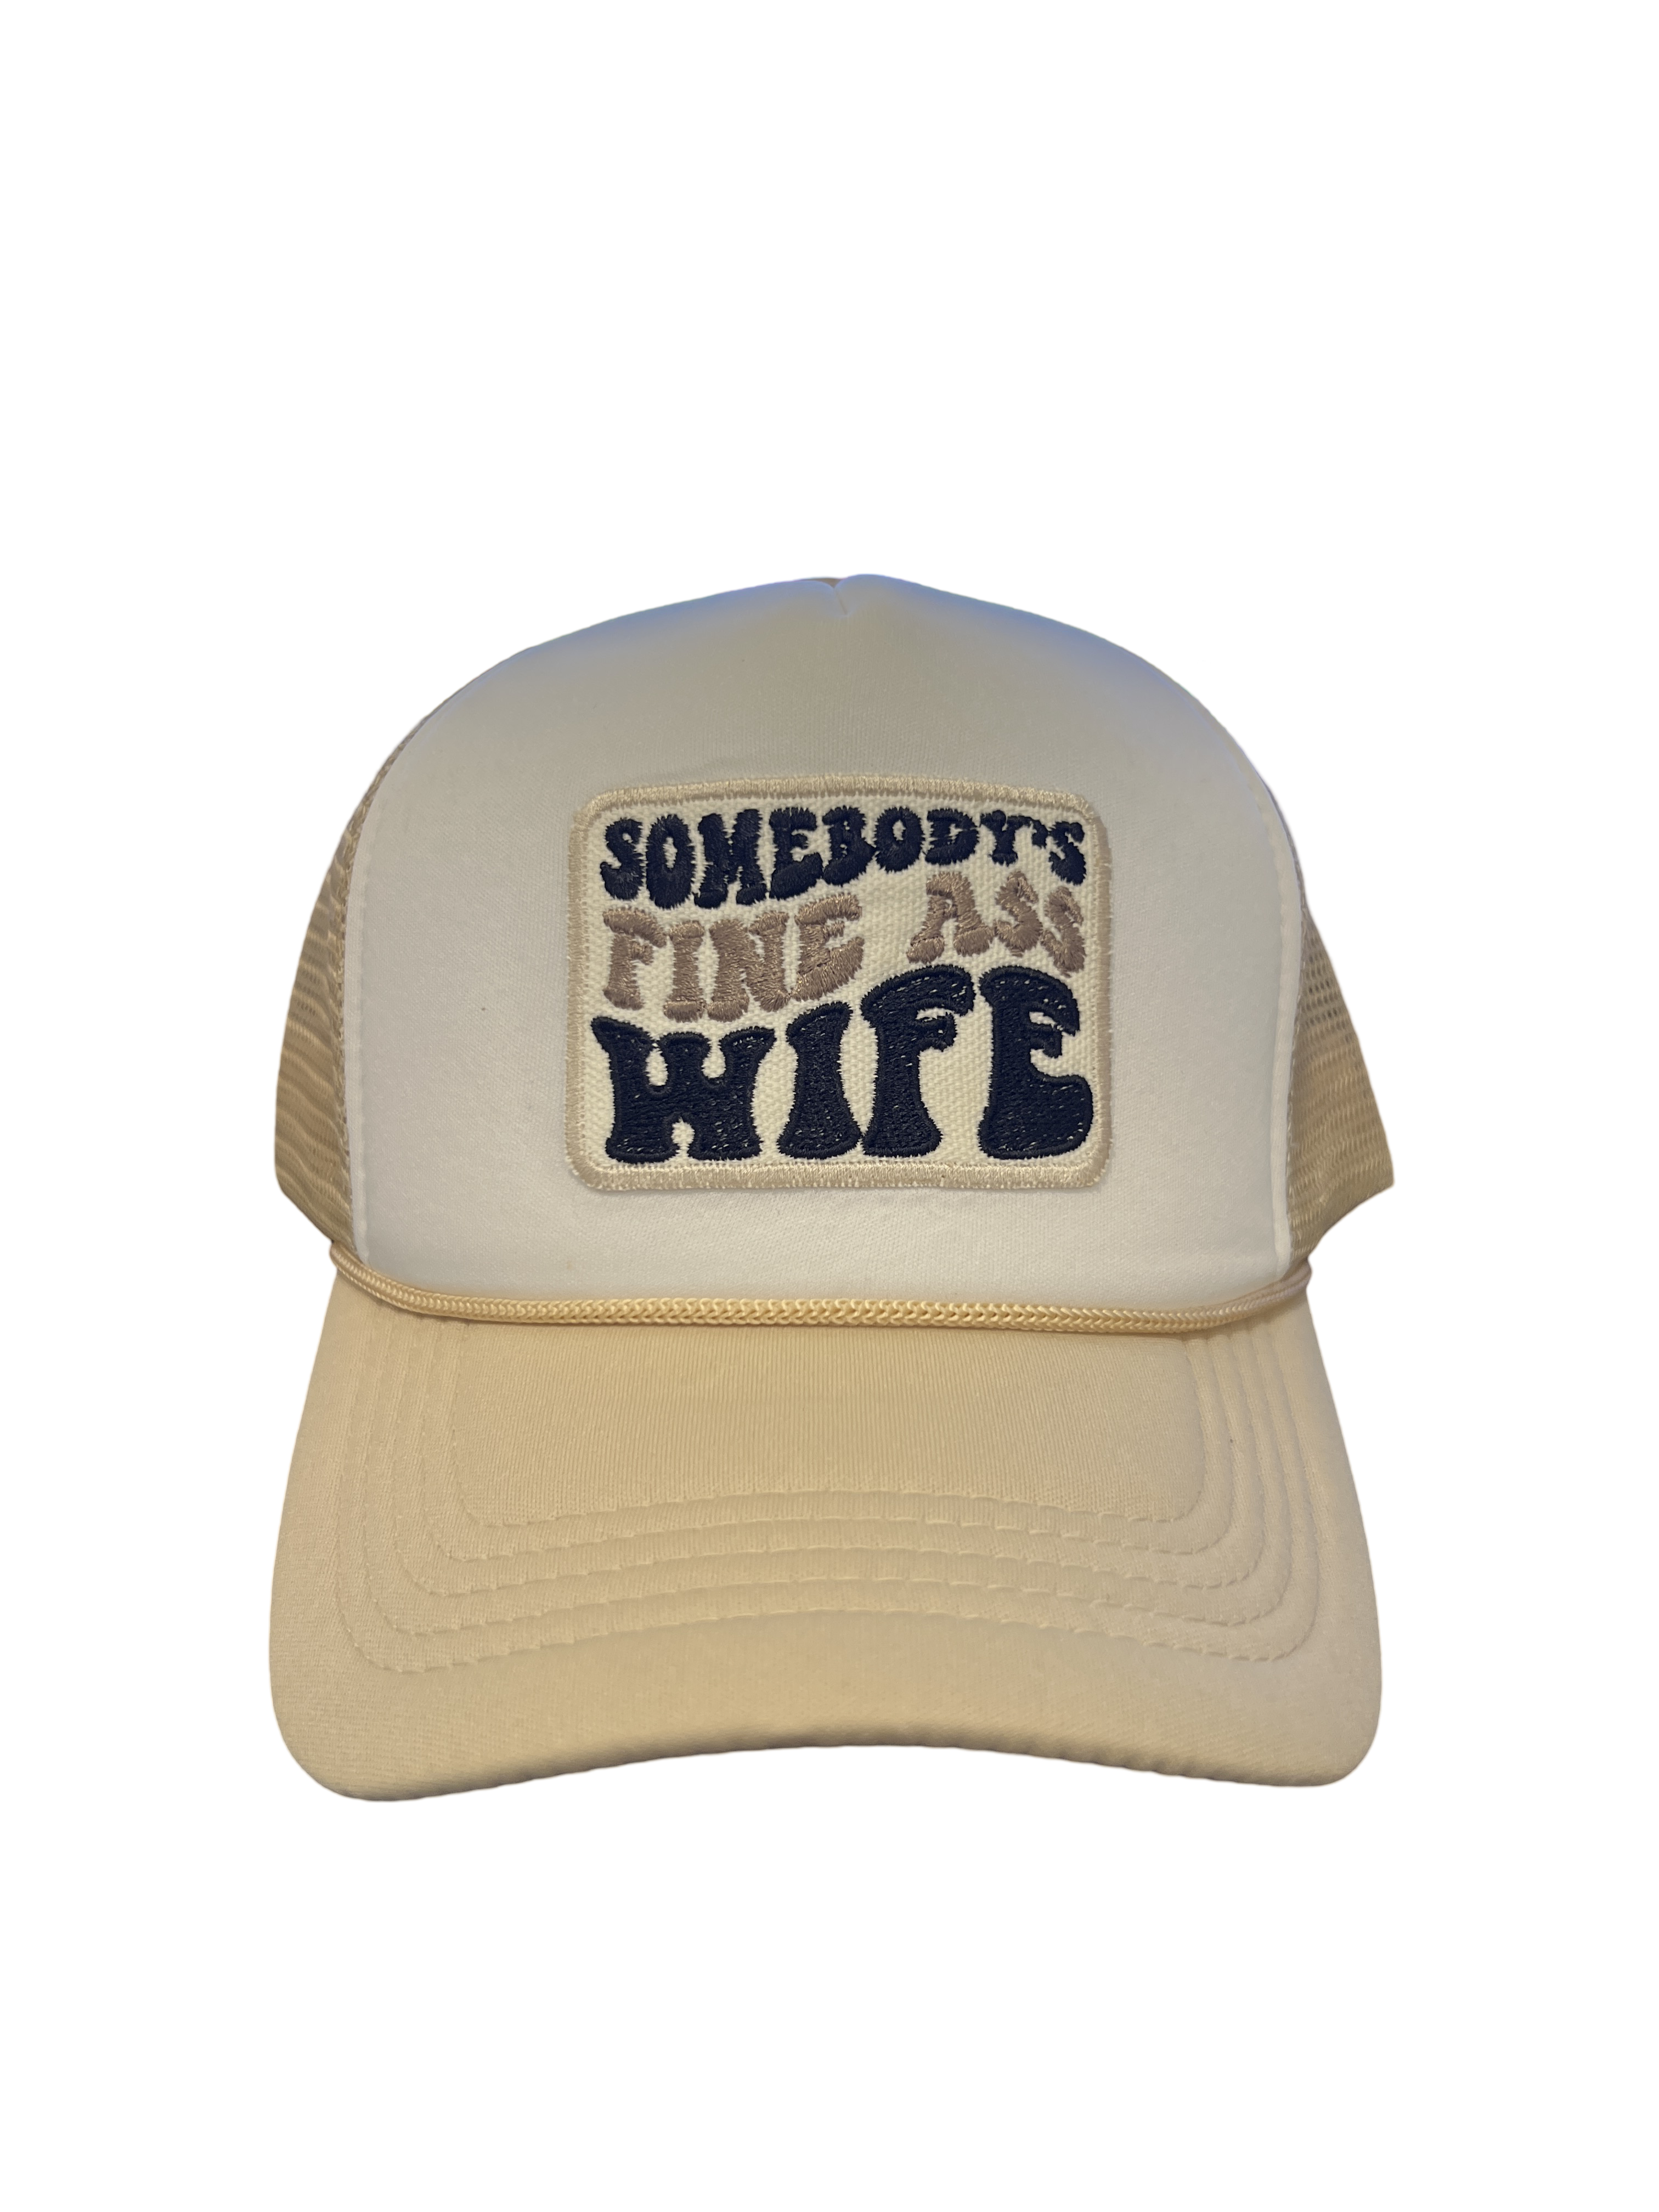 Trucker Hat Foam "Somebody's Fine Ass Wife"